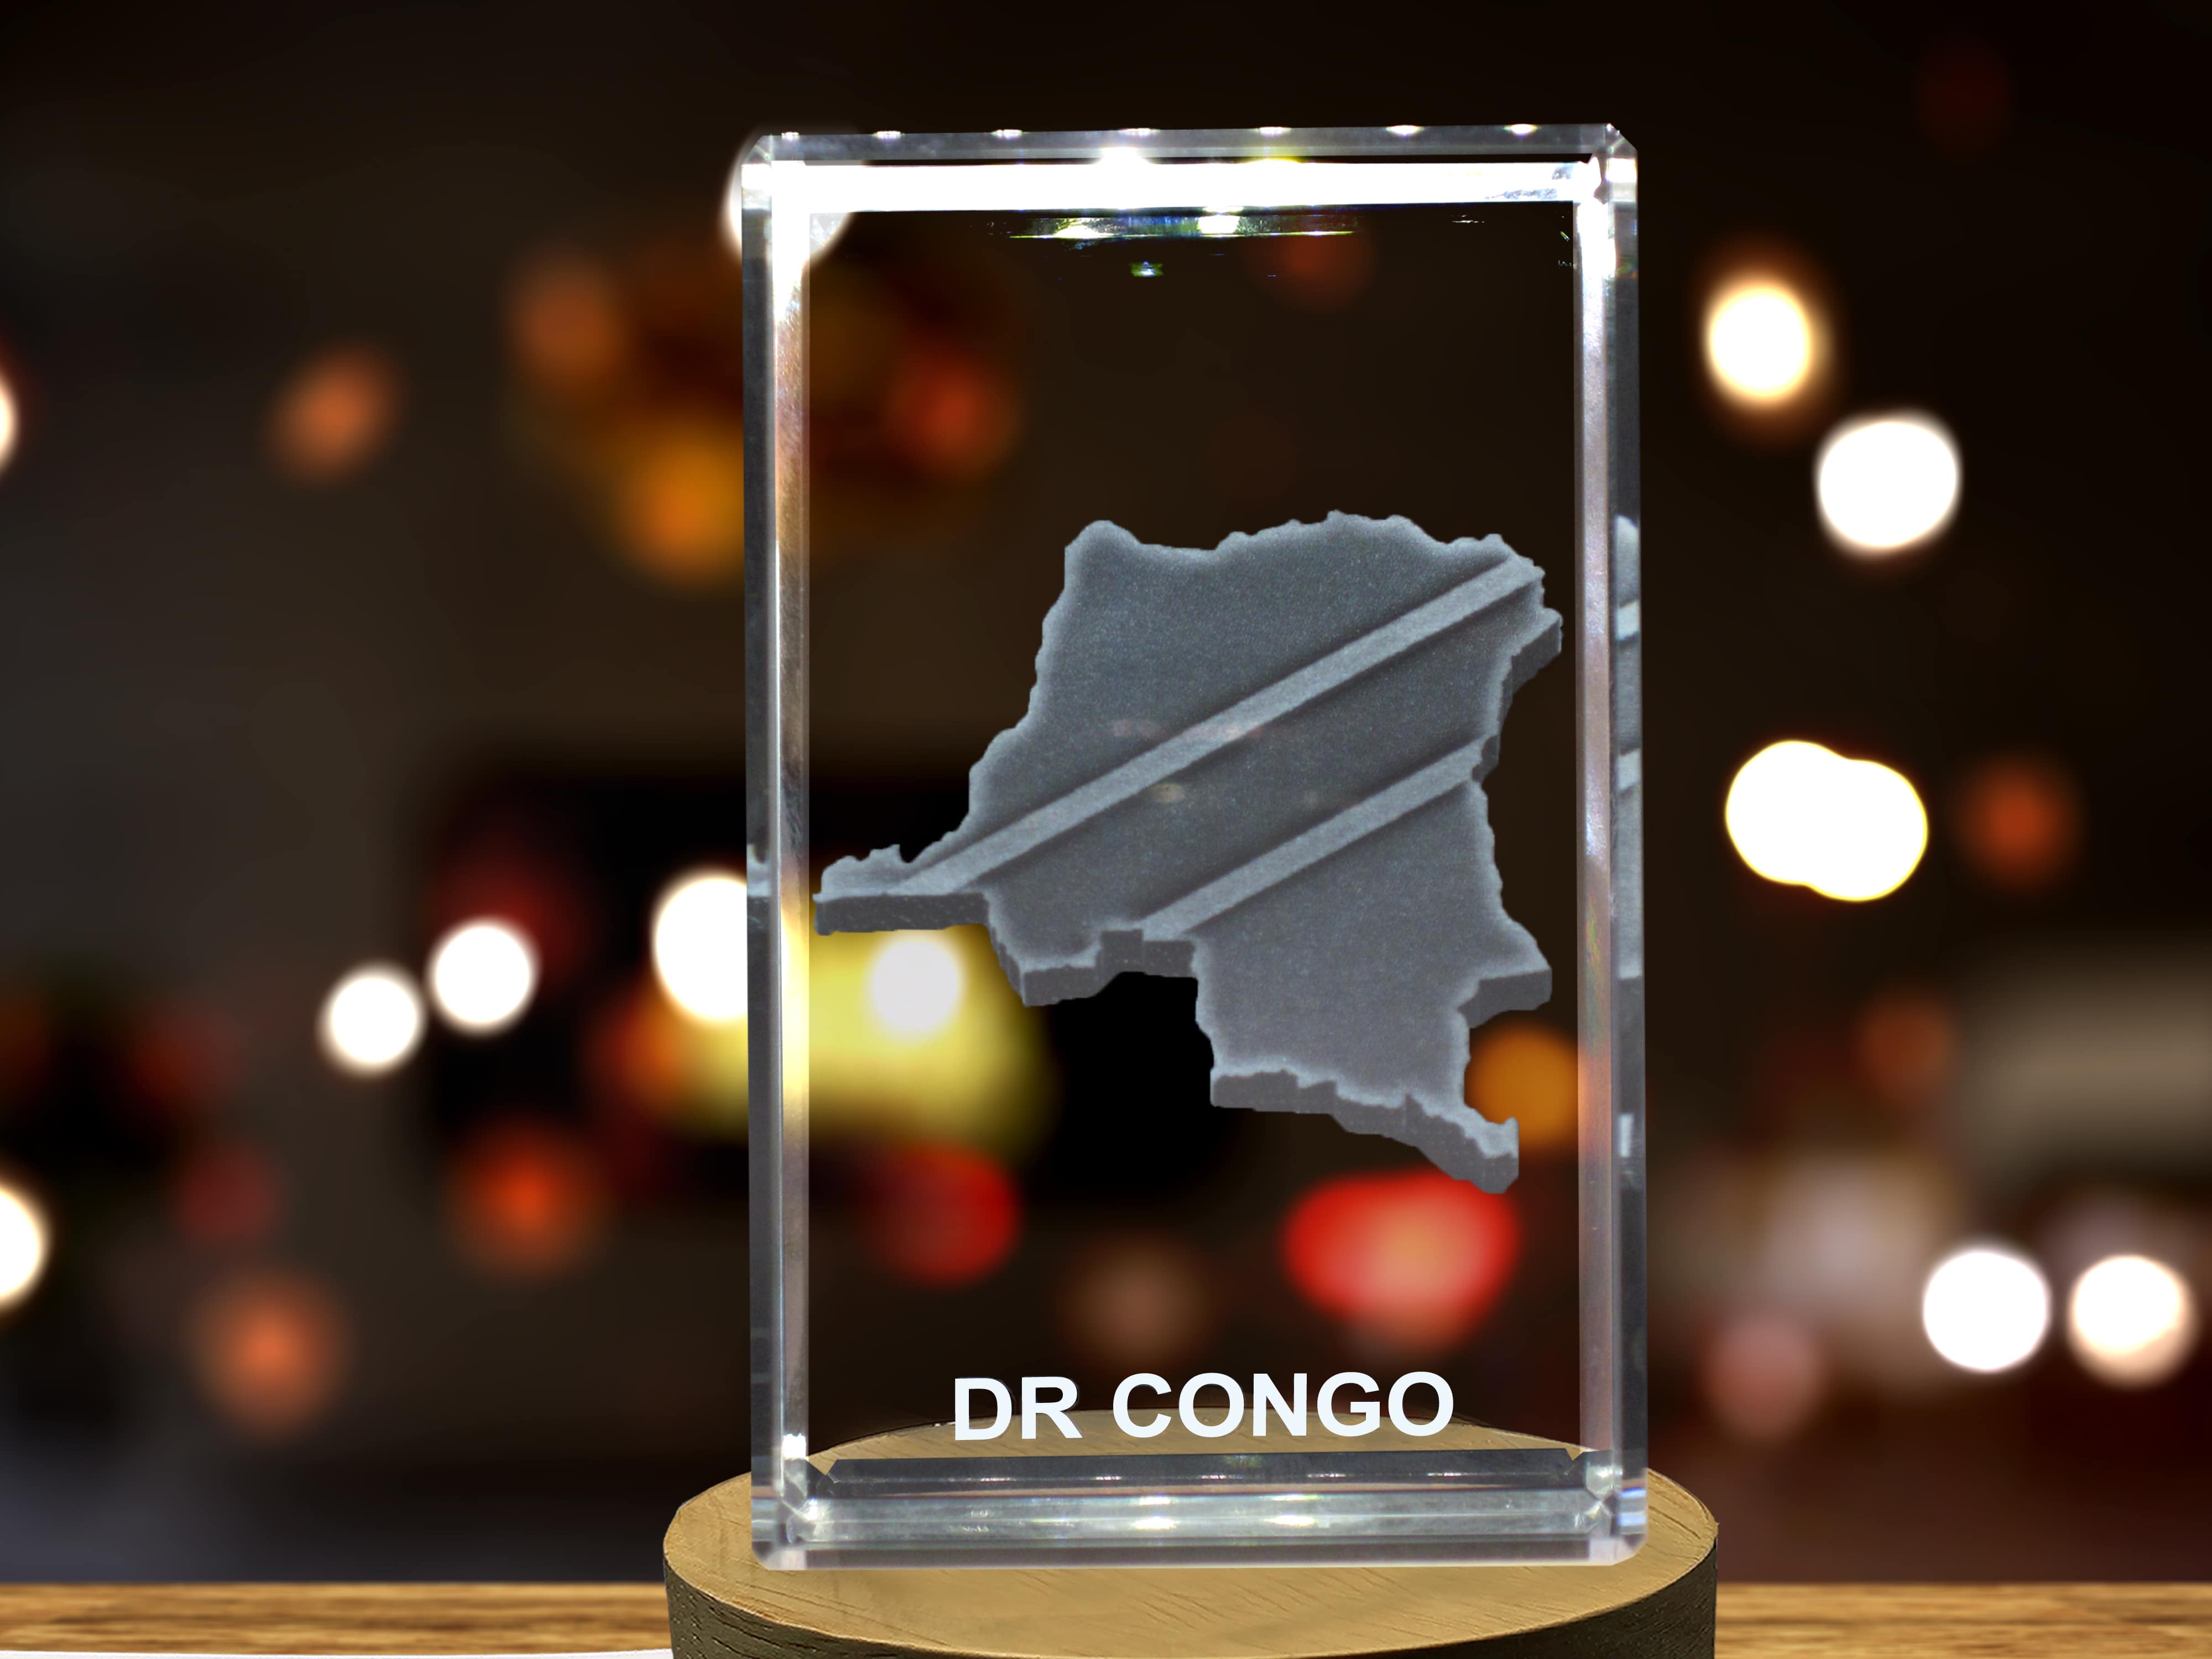 DR Congo 3D Engraved Crystal 3D Engraved Crystal Keepsake/Gift/Decor/Collectible/Souvenir A&B Crystal Collection